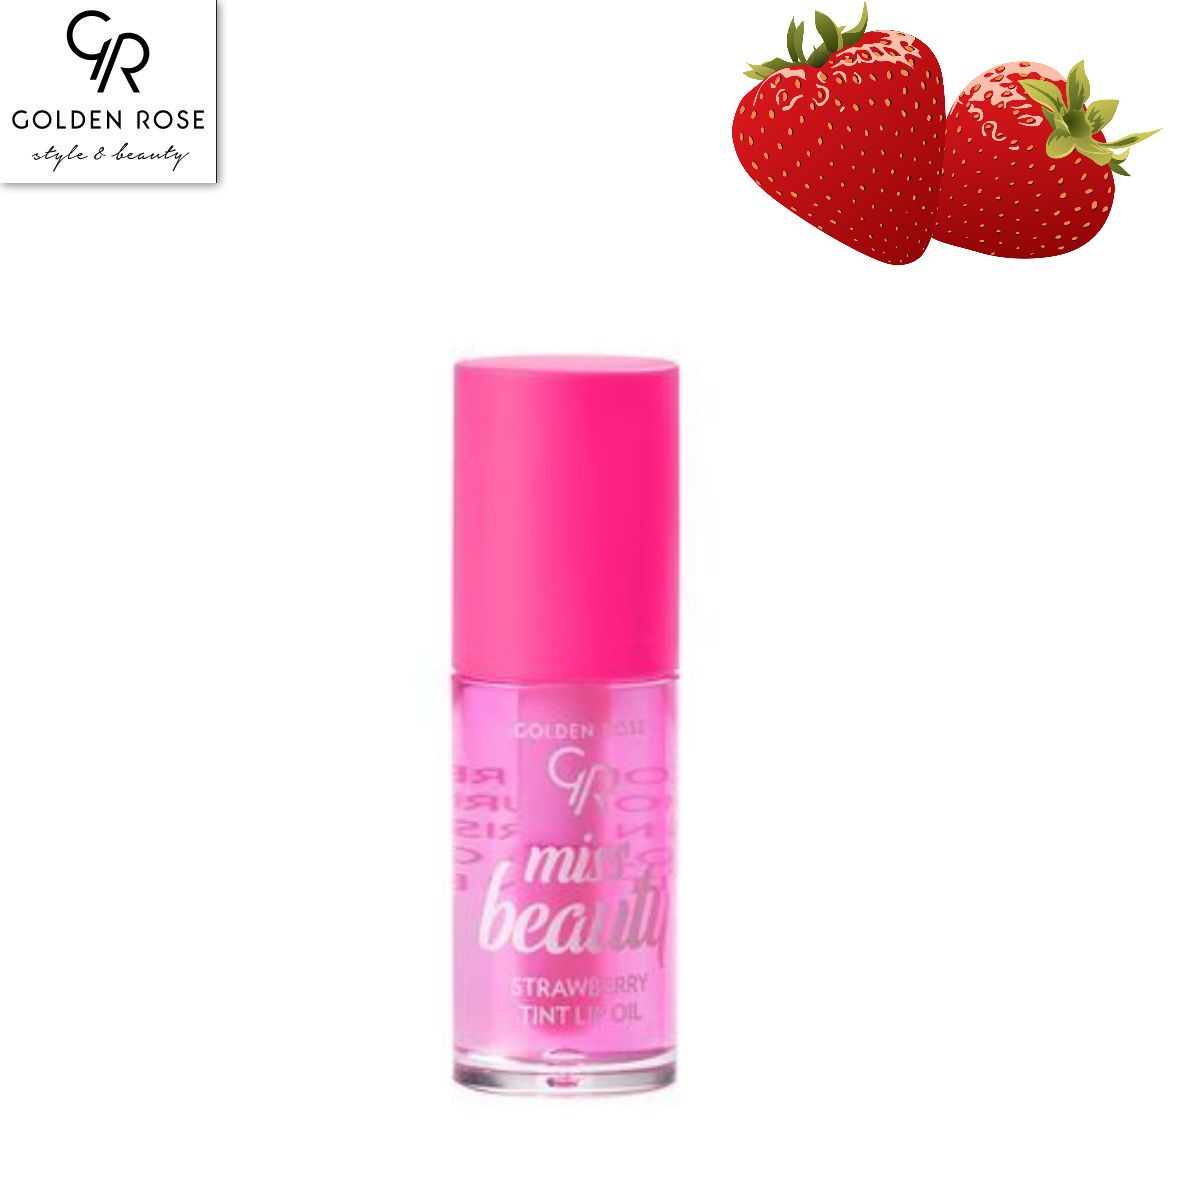 Тинт-масло для губ -уникальная веганская формула масла для губ. идеальная смесь вишневого / клубничного масел, масла жожоба, витамина Е и увлажняющего агента питает и увлажняет губы, как бальзам, сияет, как блеск. Технология Color reviver улучшает естественный цвет губ с помощью розового оттенка, который подбирается в соответствии с вашим уровнем PH губ. Большой прецизионный аппликатор придает губам мягкость и гладкость с блестящим, нелипким покрытием.  Масло-тинт для губ - это инновационный продукт, который сочетает в себе свойства губной помады и увлажняющего масла. Он создан для того, чтобы придать губам яркий и стойкий цвет, а также увлажнить и смягчить их.  Масло-тинт обладает легкой текстурой, которая нежно наносится на губы, не оставляя ощущения липкости или тяжести. Оно быстро впитывается и создает на губах тонкую, но стойкую пленку, которая сохраняет цвет в течение длительного времени.  Одной из главных особенностей масла-тинта является его способность подстраиваться под естественный цвет губ, создавая индивидуальный оттенок. При нанесении масло-тинта на губы, оно реагирует с кислородом в воздухе и меняет свой цвет, подстраиваясь под естественный пигмент губ. Таким образом, каждый оттенок масла-тинта будет выглядеть уникально на каждом человеке.  Кроме того, масло-тинт обогащено увлажняющими компонентами, такими как масло ши, витамин Е и алоэ вера, которые питают и увлажняют губы, предотвращая их сухость и шелушение. Они делают губы мягкими и гладкими на ощупь, придавая им здоровый и ухоженный вид.  Масло-тинт для губ - это отличный выбор для тех, кто хочет получить яркий и стойкий цвет губ, не жертвуя их увлажнением и комфортом. Он подходит для ежедневного использования и поможет создать неповторимый образ.